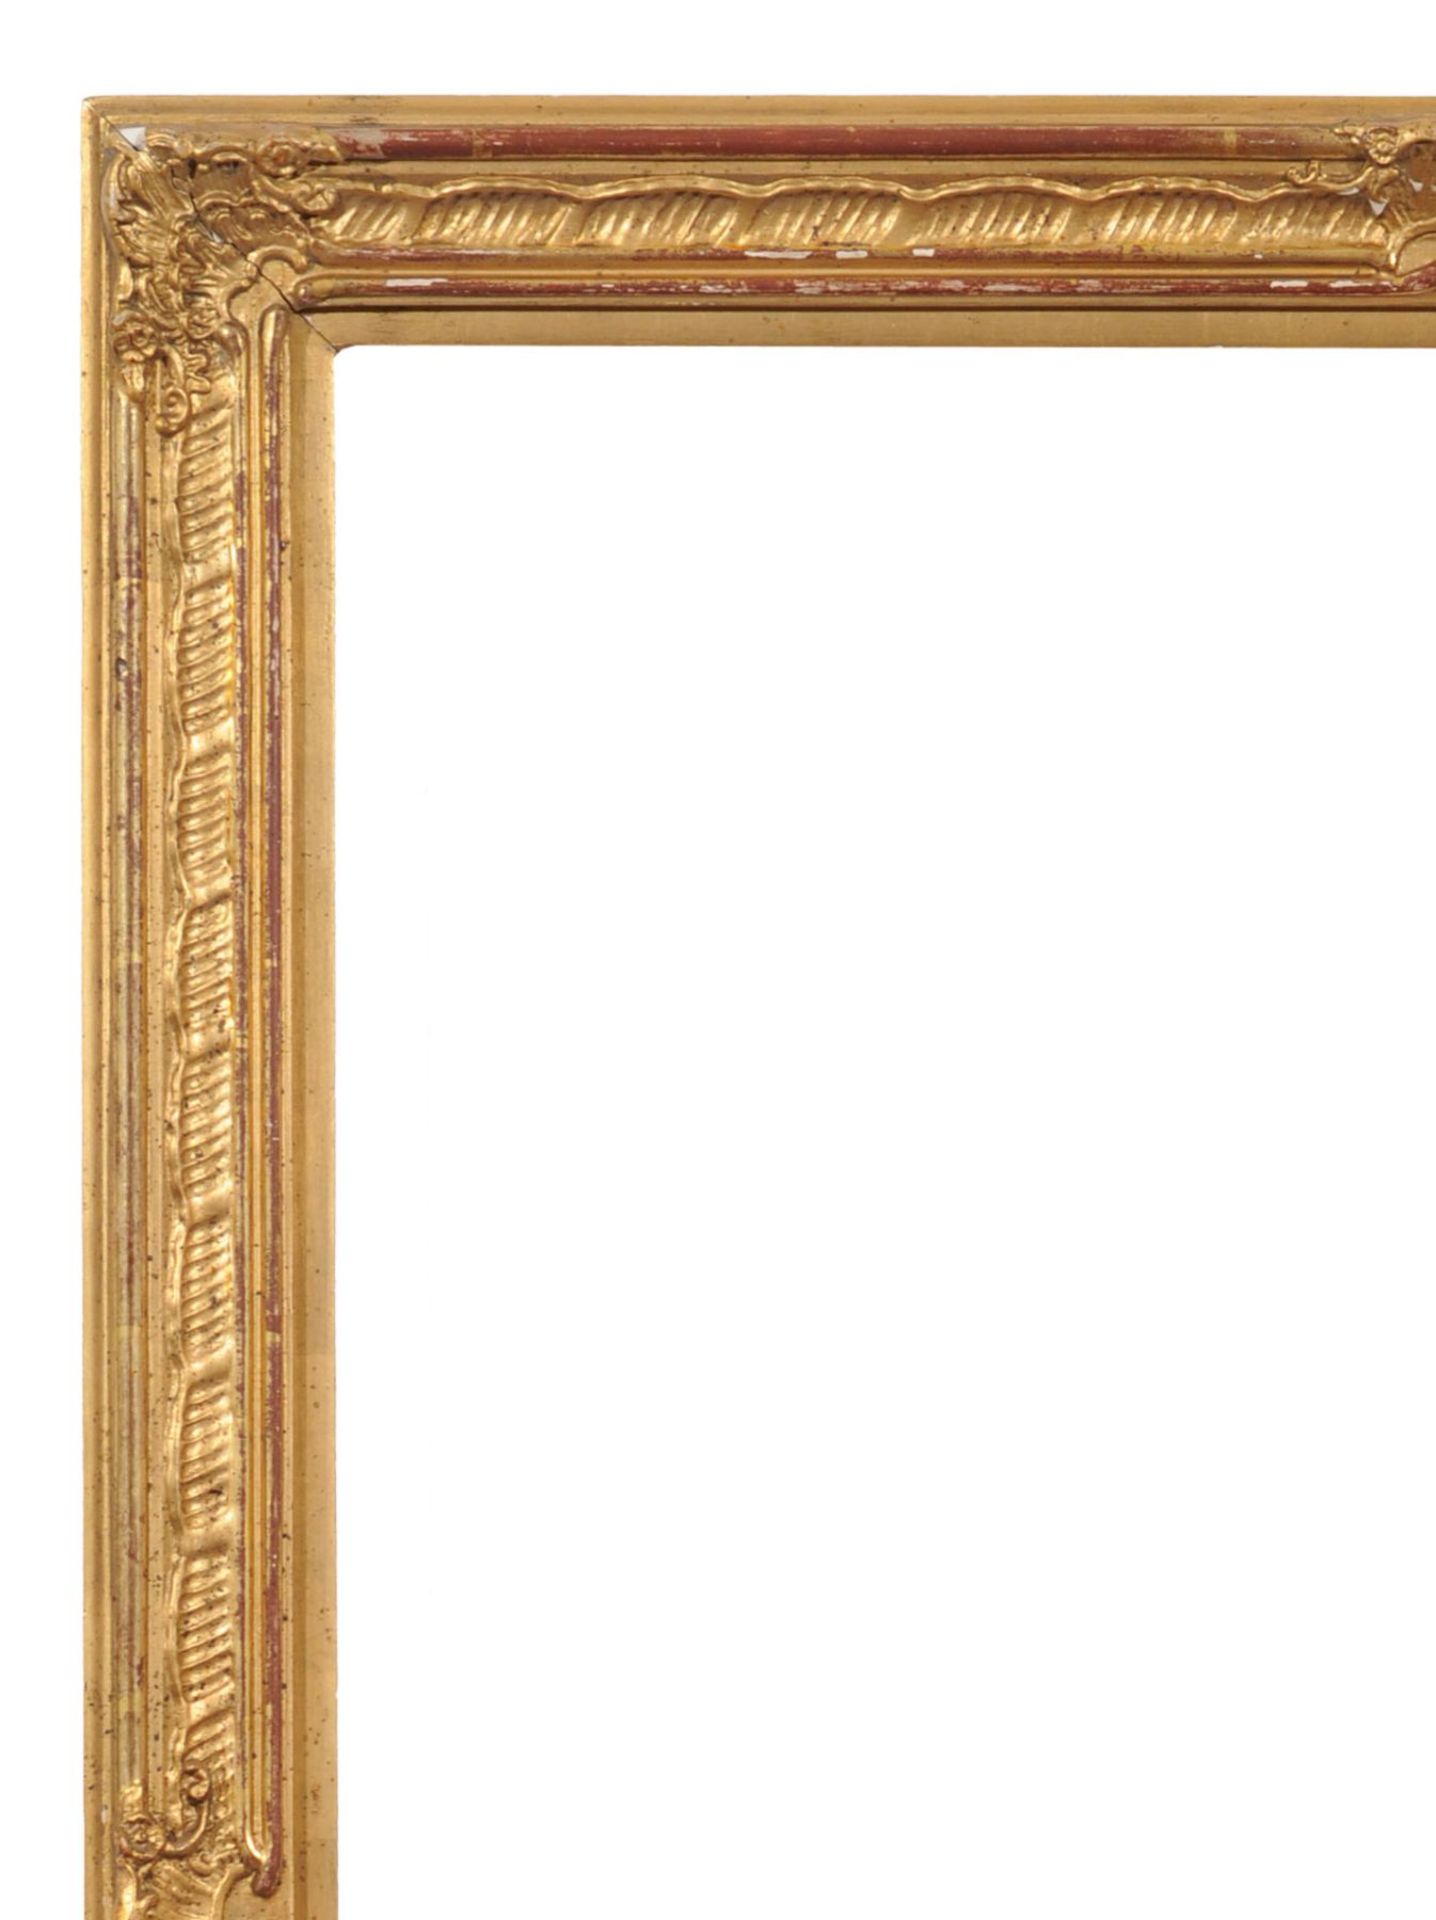 Historisierender Rahmen. Frühes 20. Jh. Holz, masseverziert und mit goldfarbenem Überzug. Flache - Bild 2 aus 2